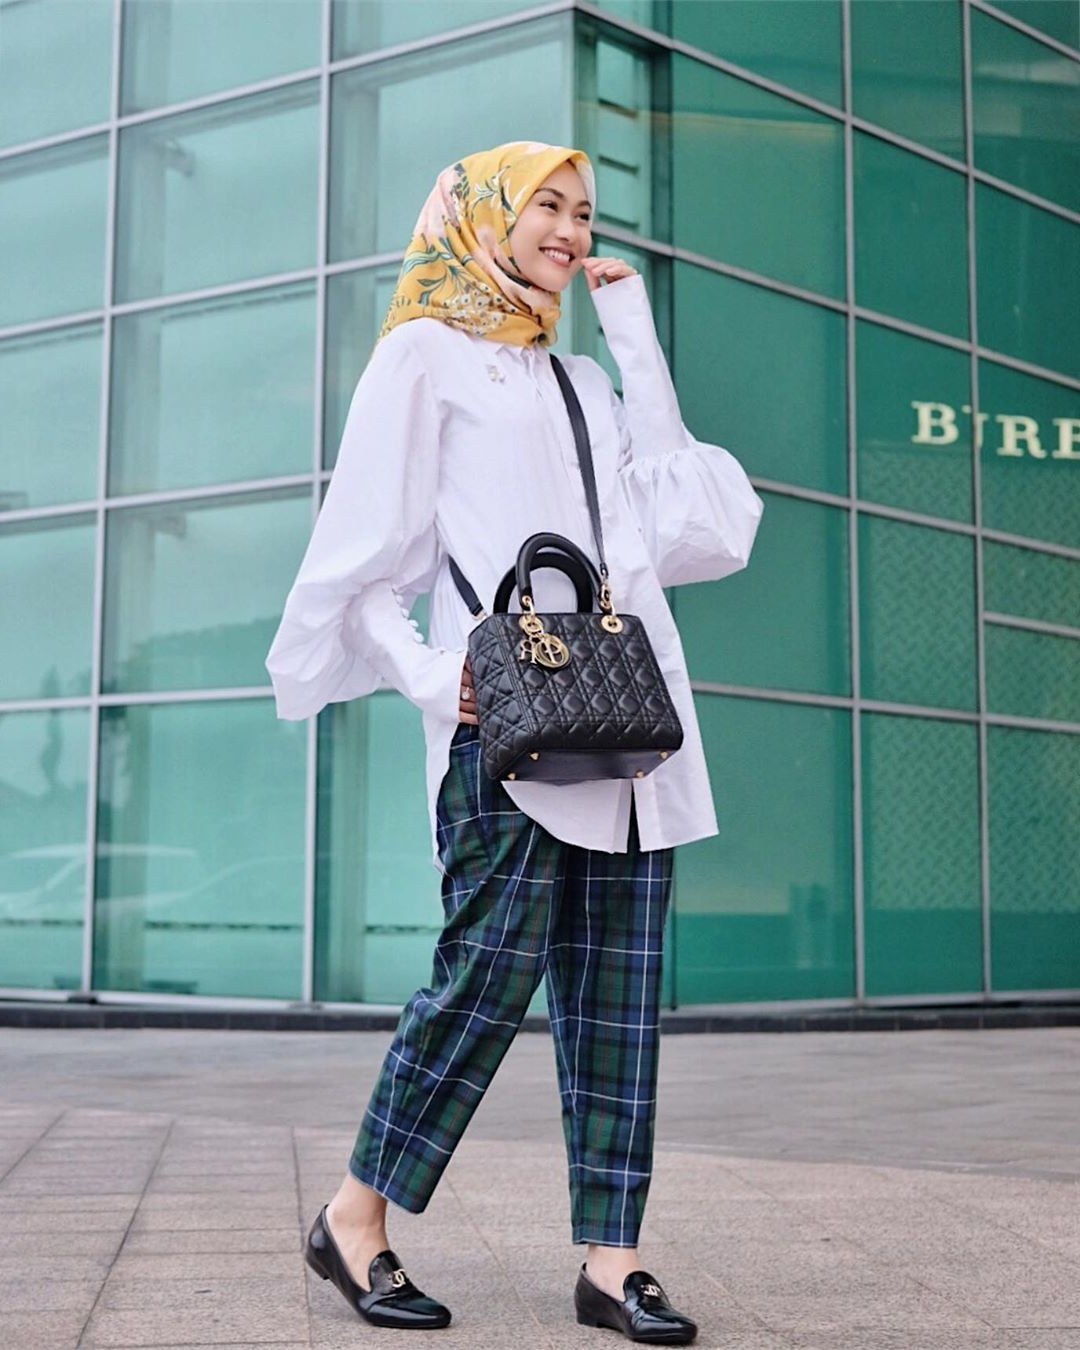 Ide Trend Baju Lebaran Tahun 2019 9ddf 5 Model Hijab Terbaru Yang Jadi Tren Di Tahun 2019